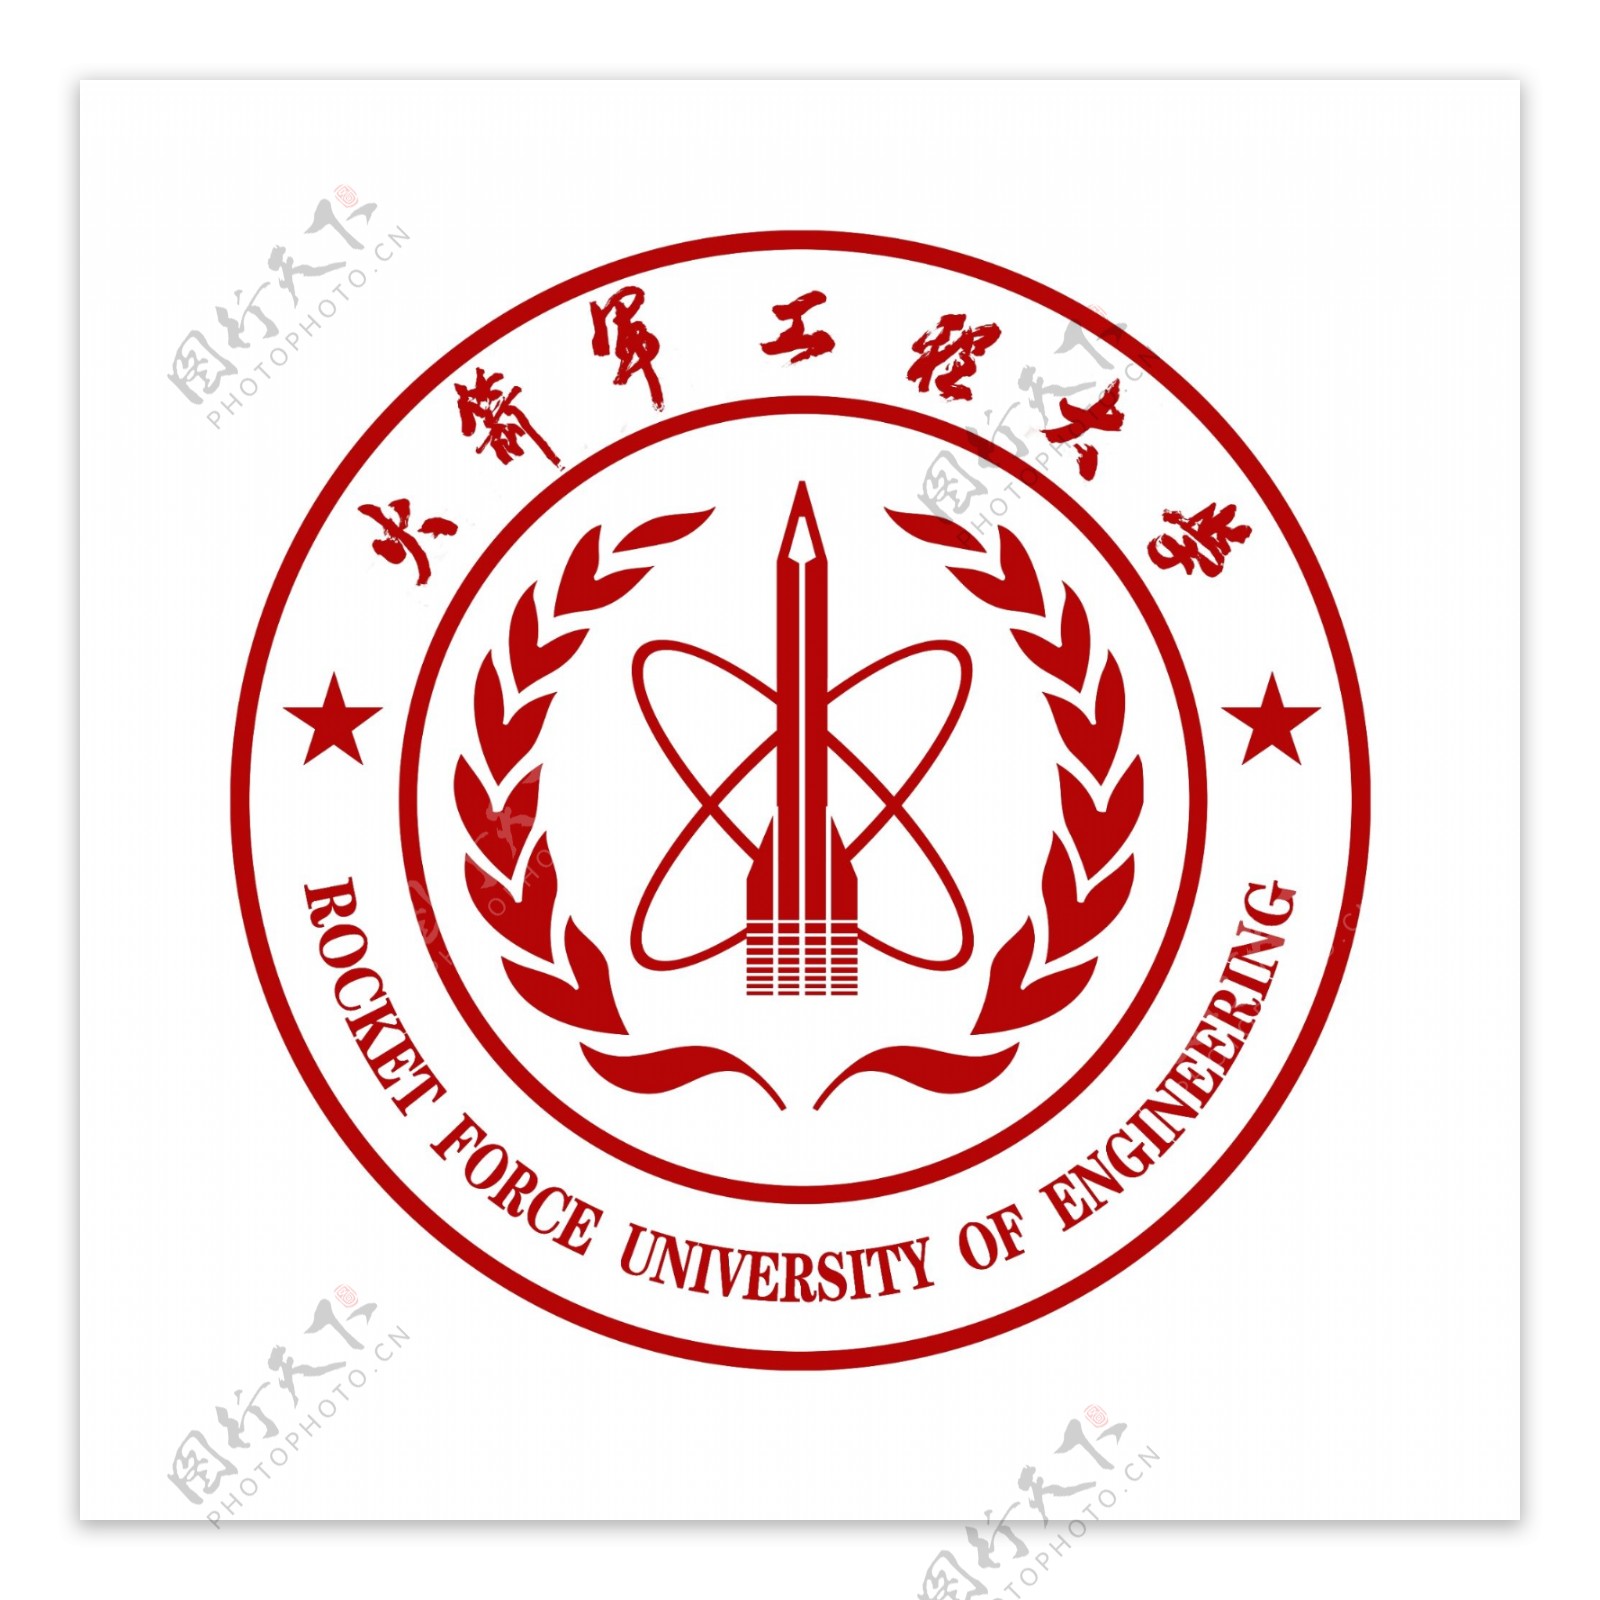 火箭军工程大学logo